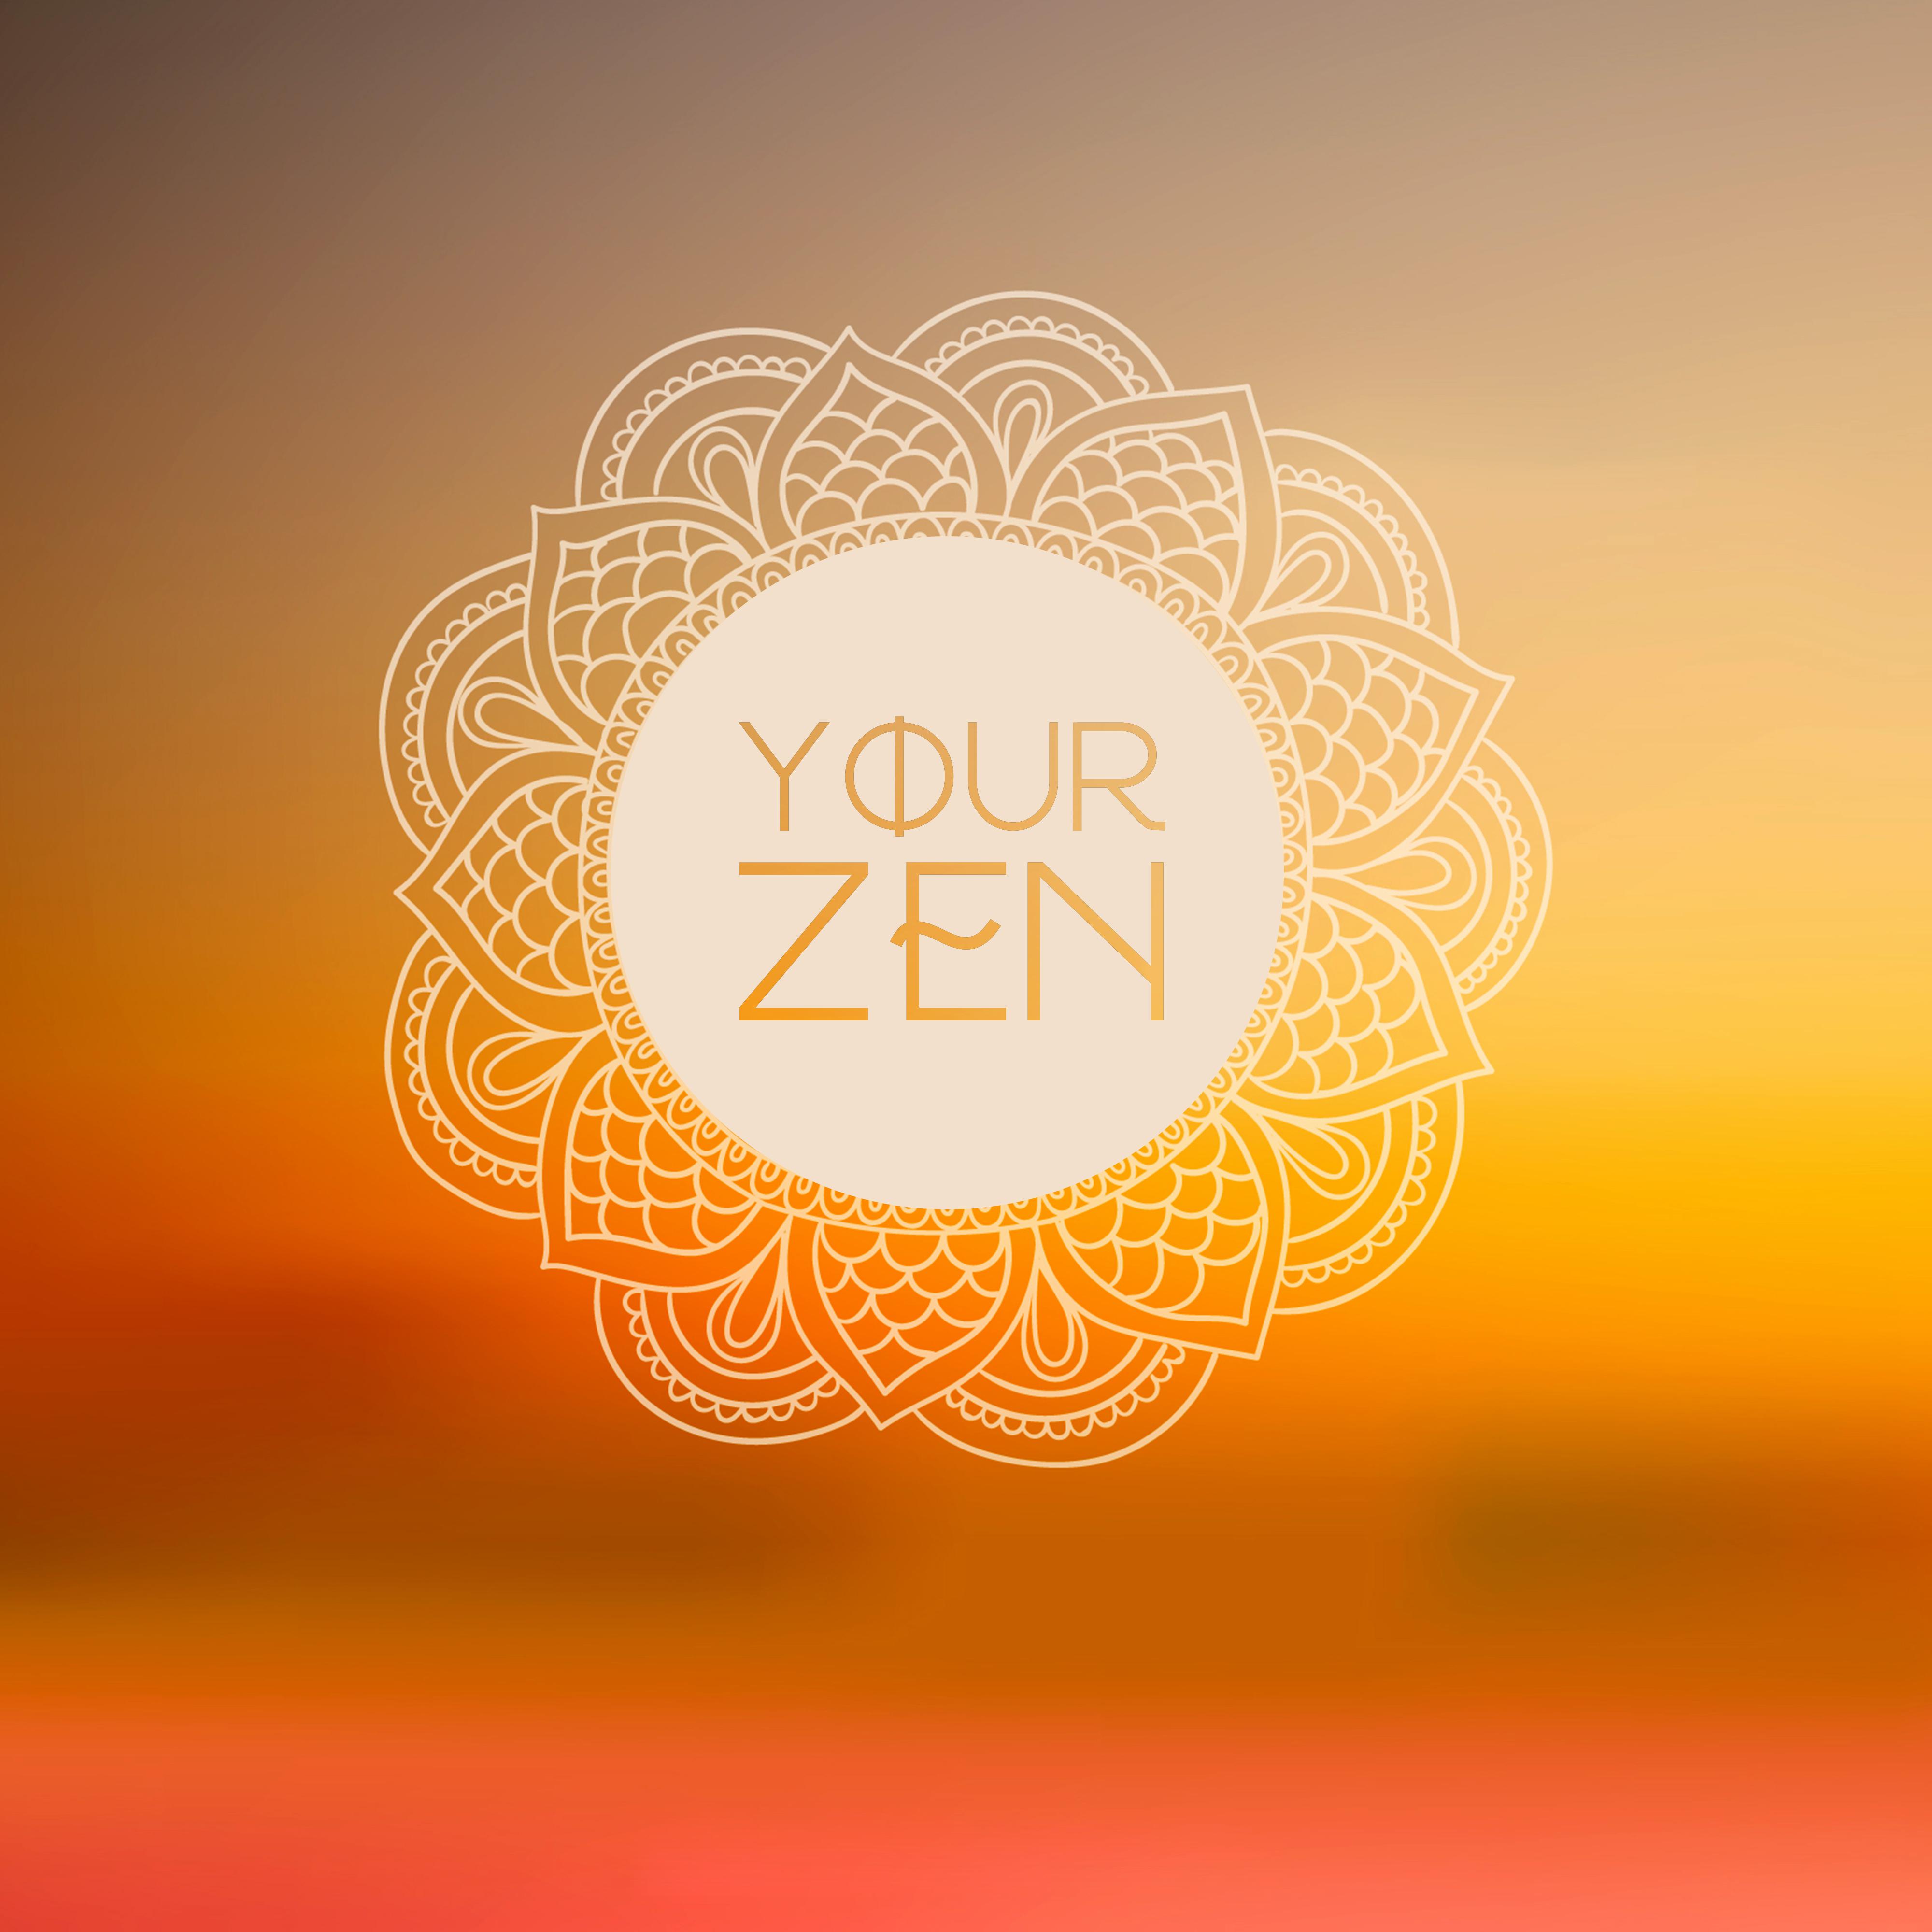 Your Zen